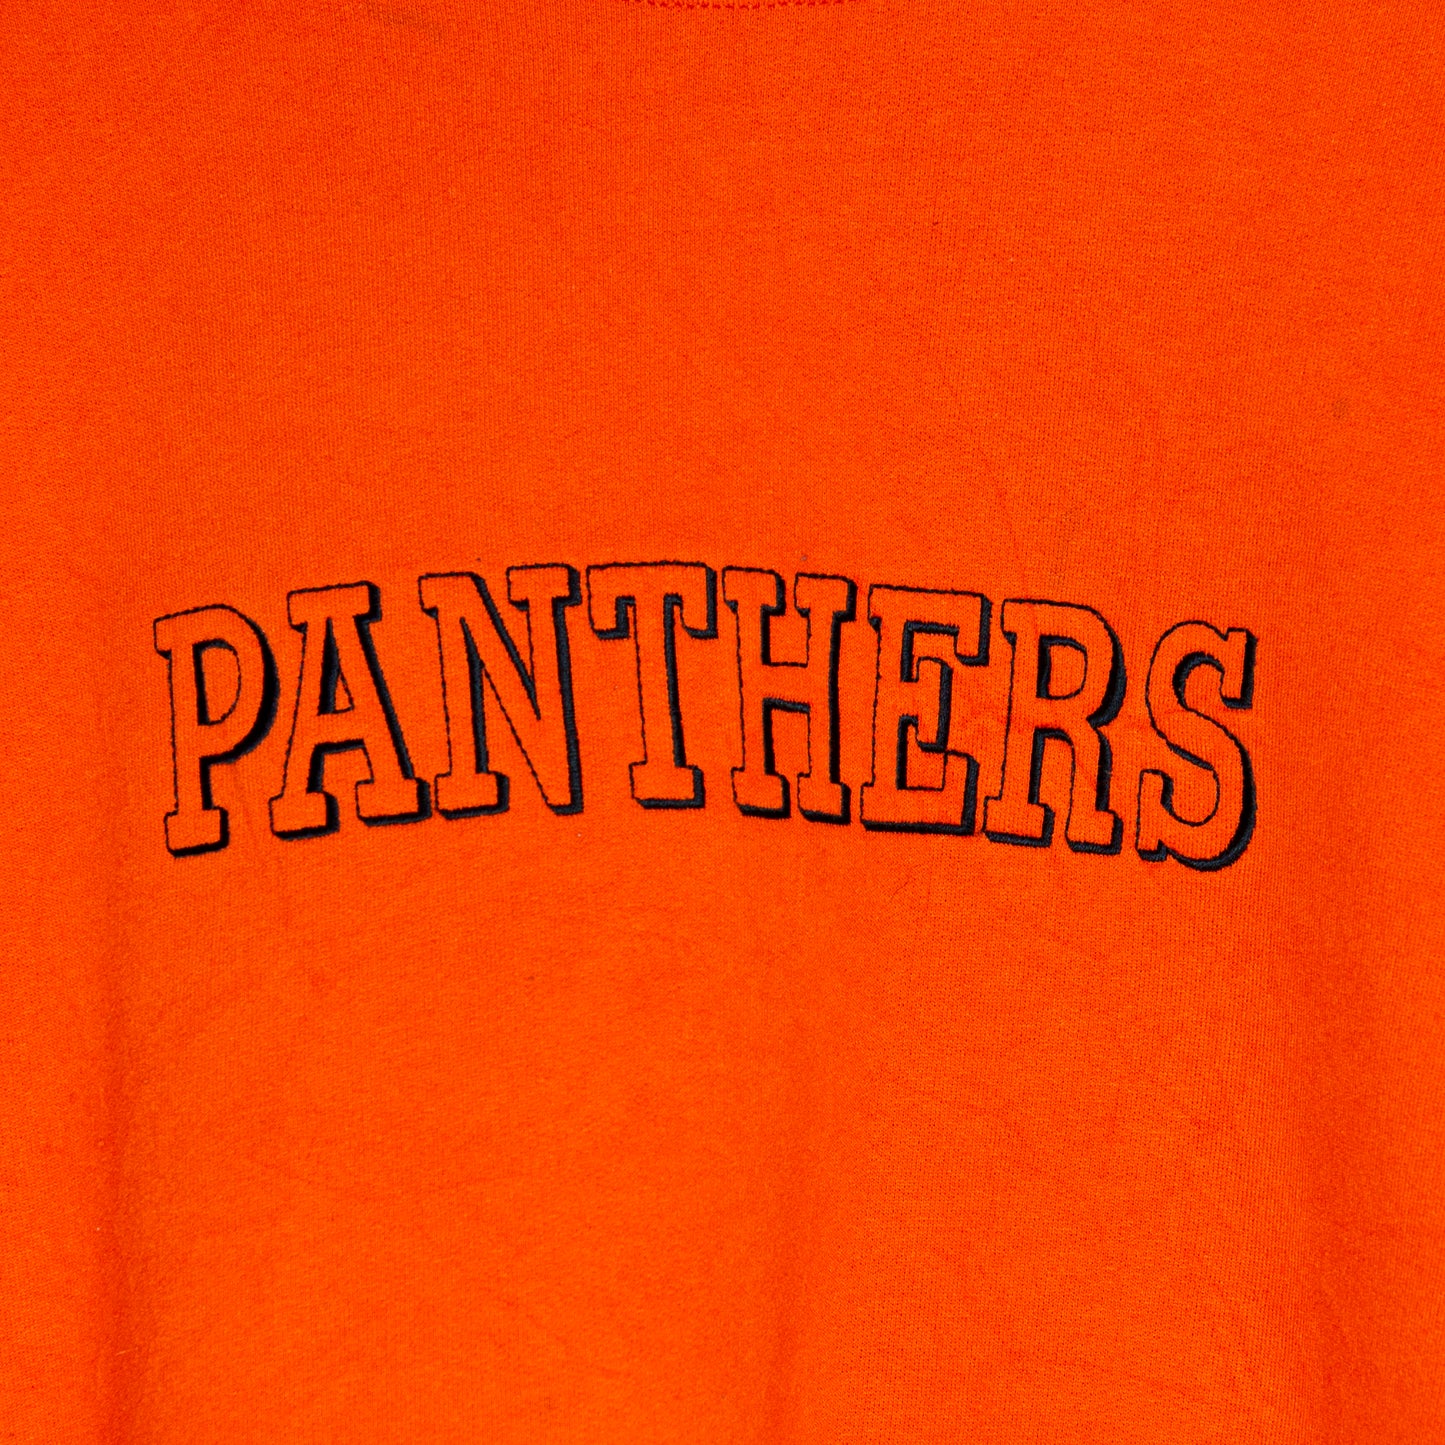 Vintage Panthers Sweatshirt Large